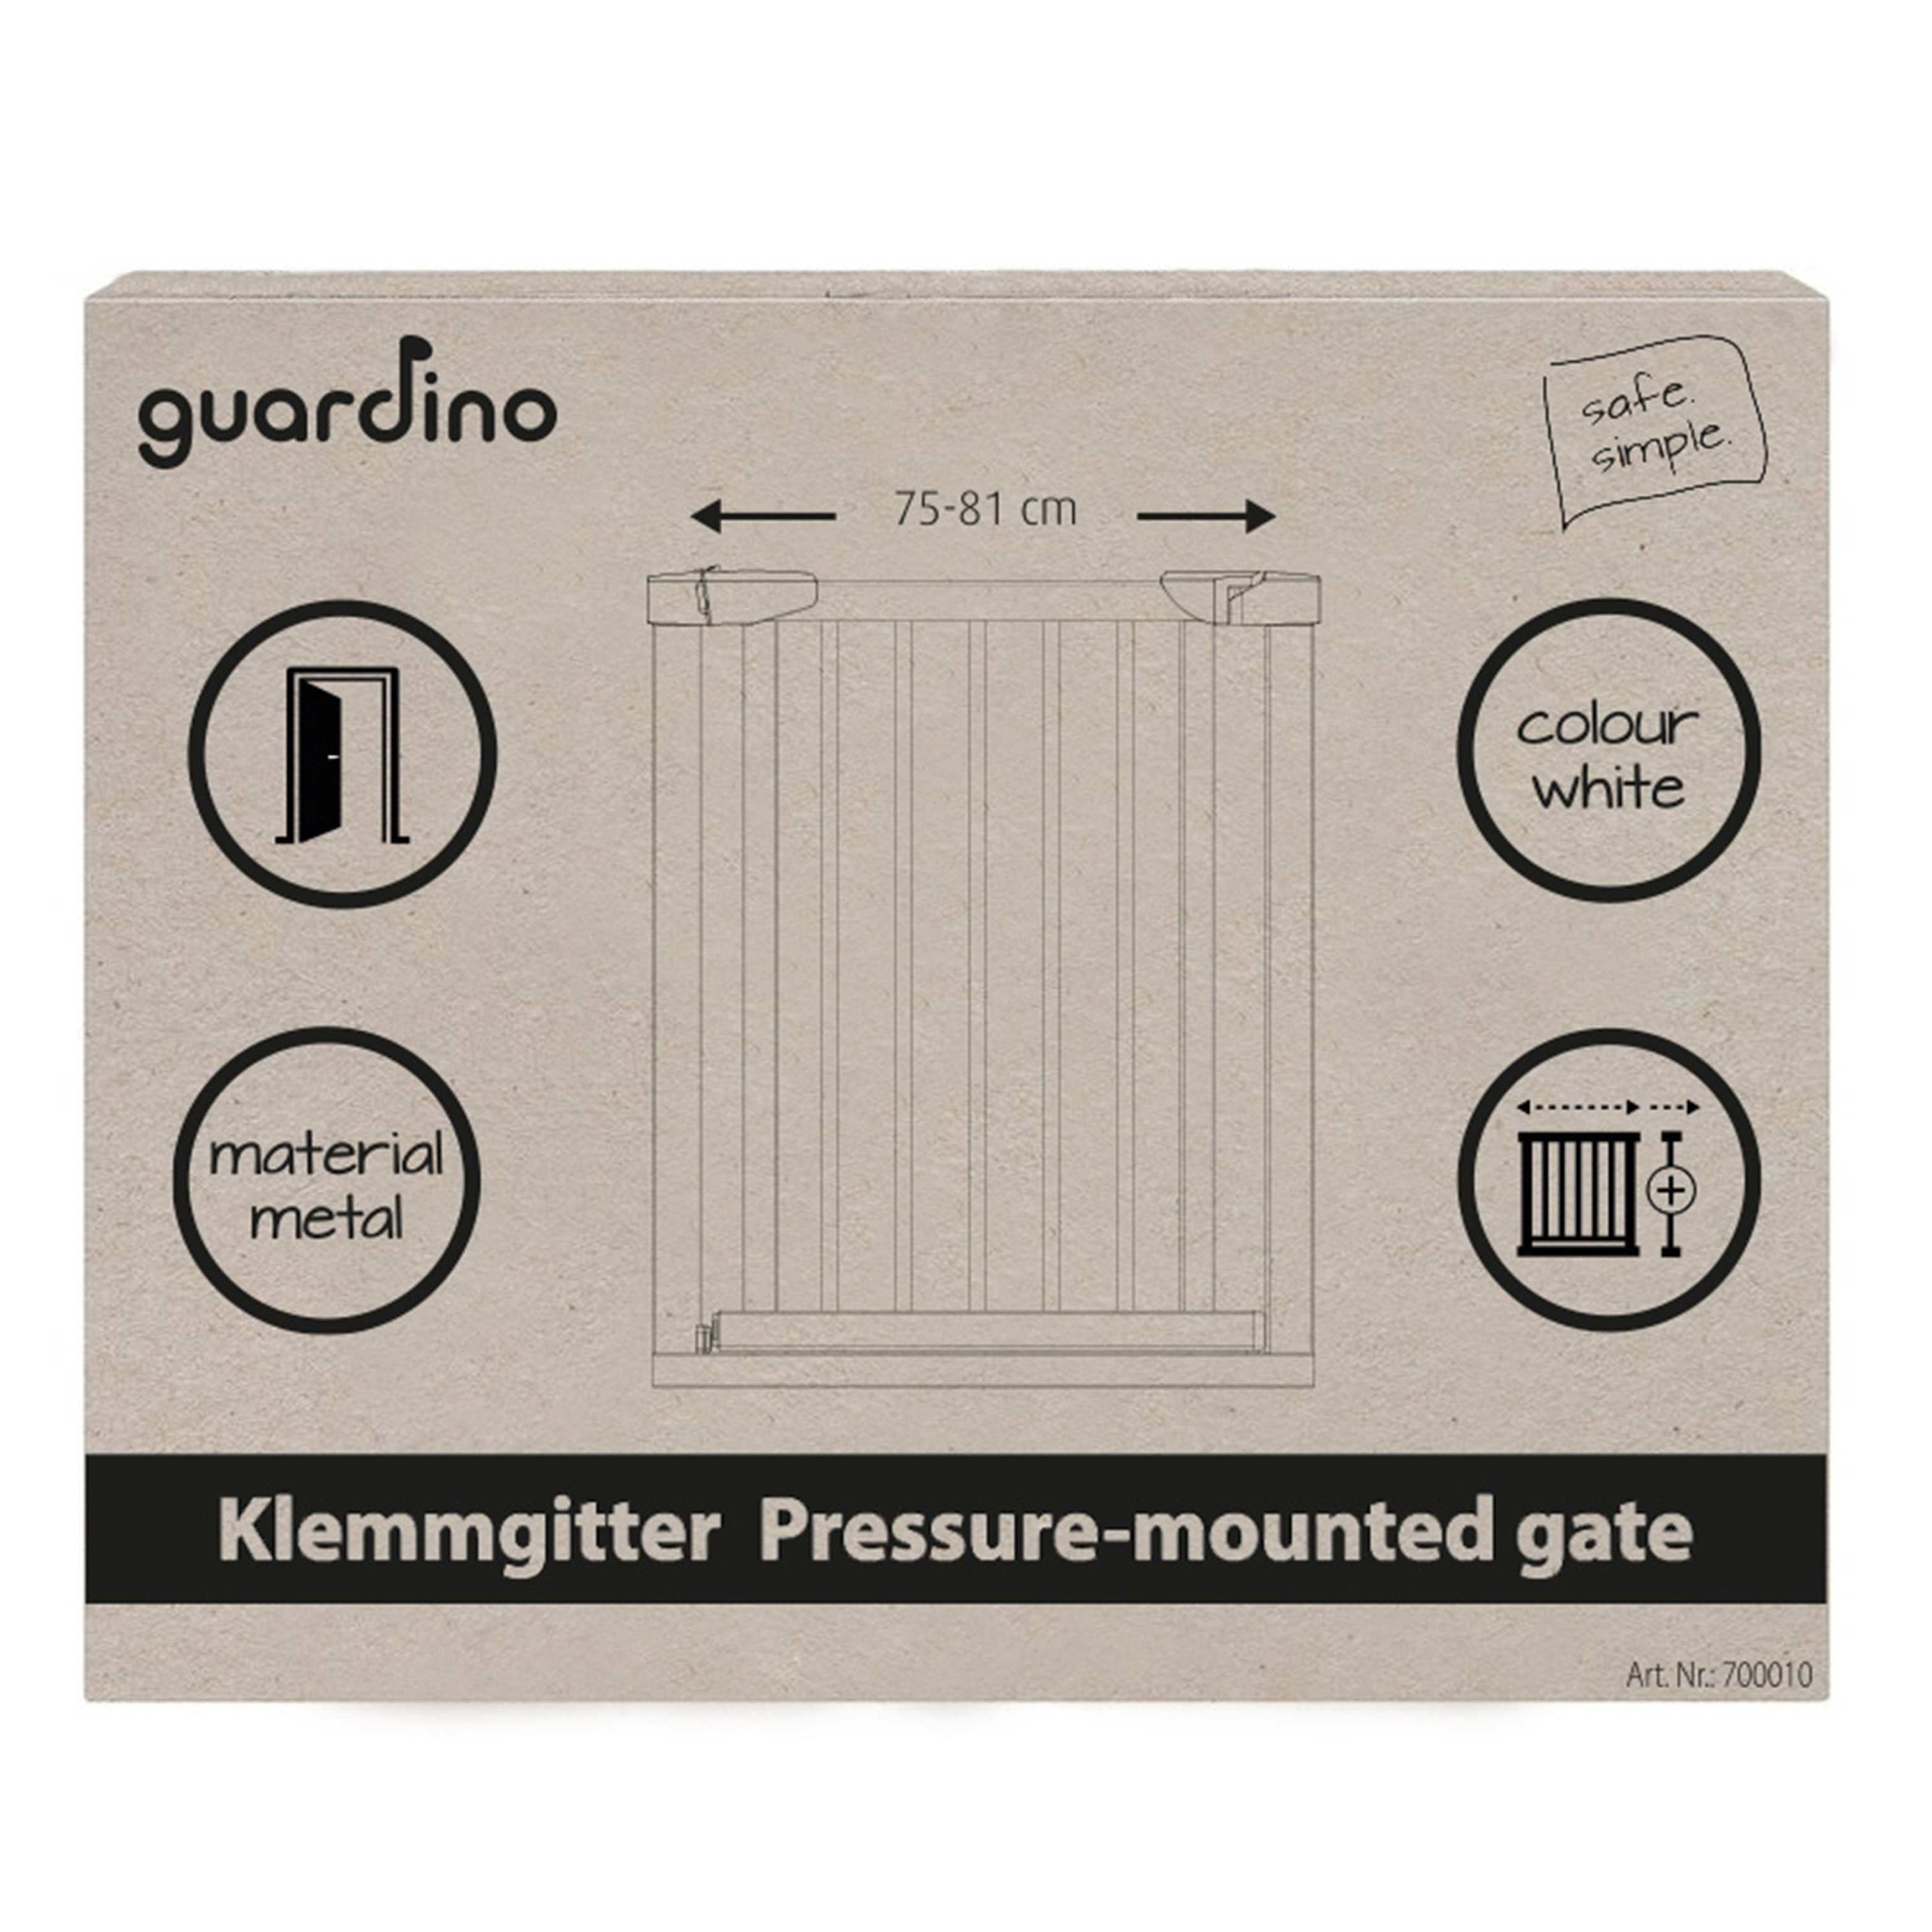 Guardino Türschutzgitter mit 1x 7cm und 1x 14cm Verlängerung, 96-102 cm, Treppenschutzgitter ohne Bohren